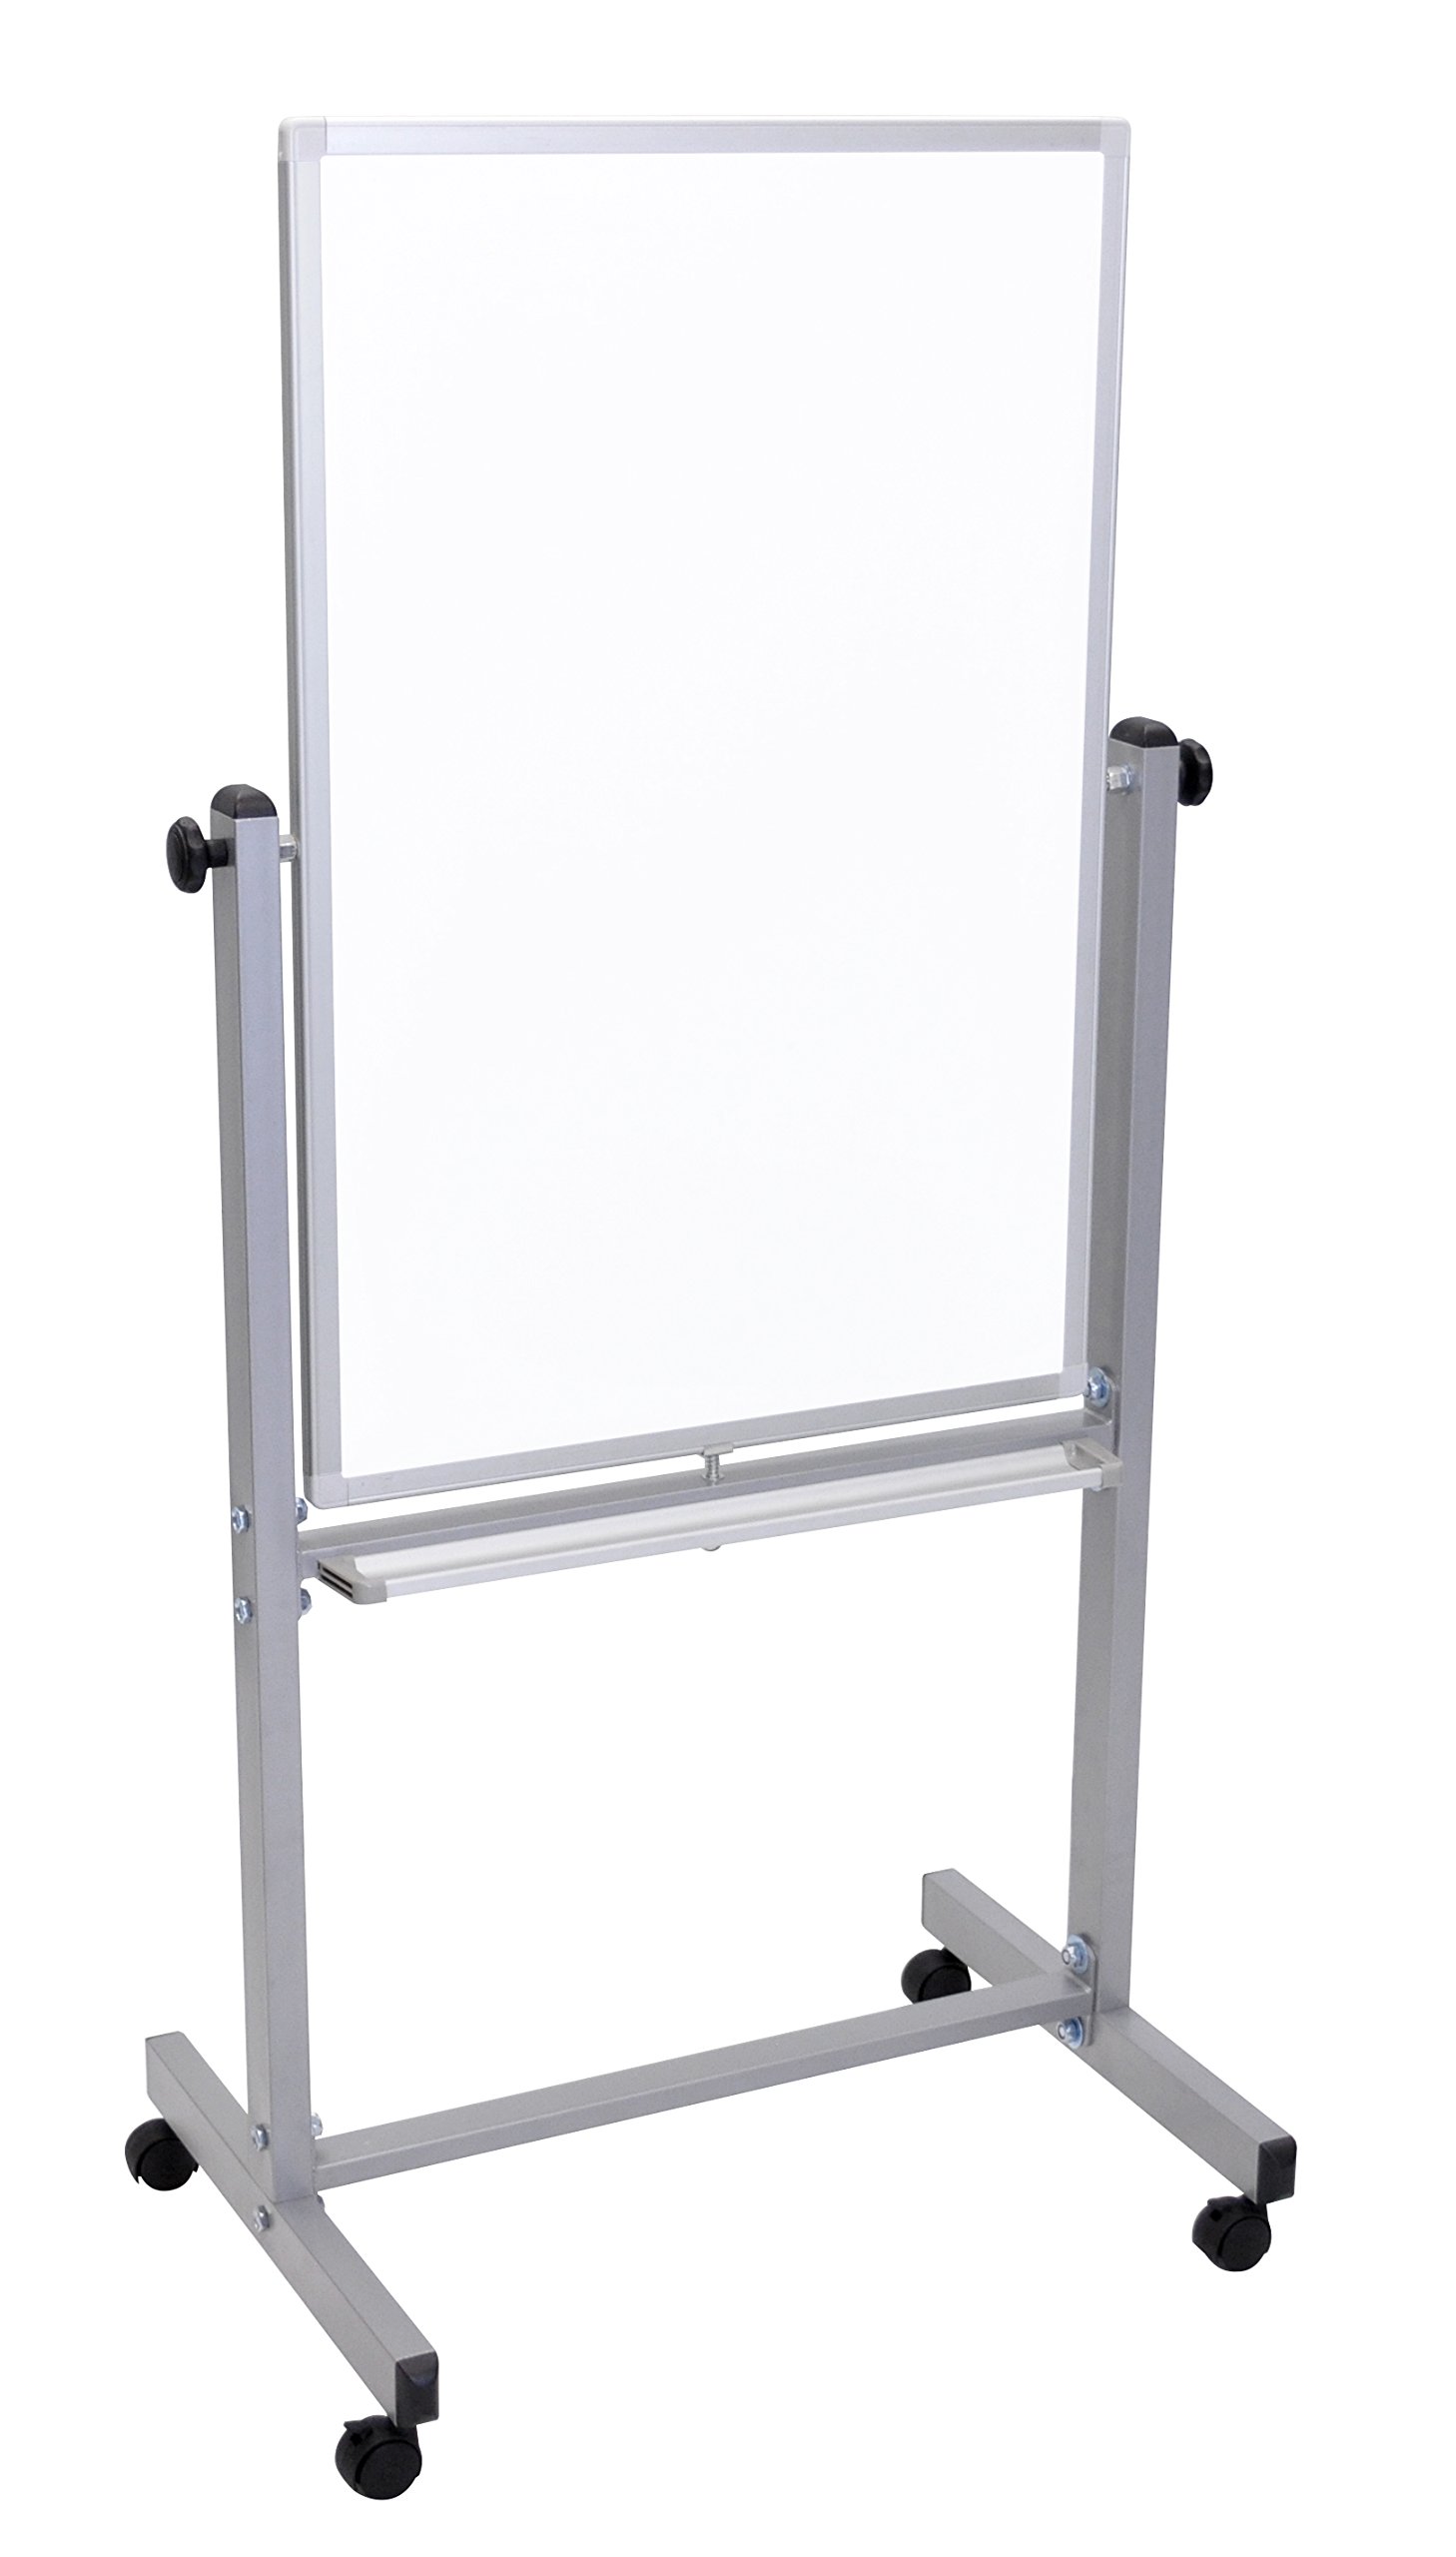 LUXOR Tableau blanc magnétique double face effaçable à sec mobile avec cadre et support en aluminium